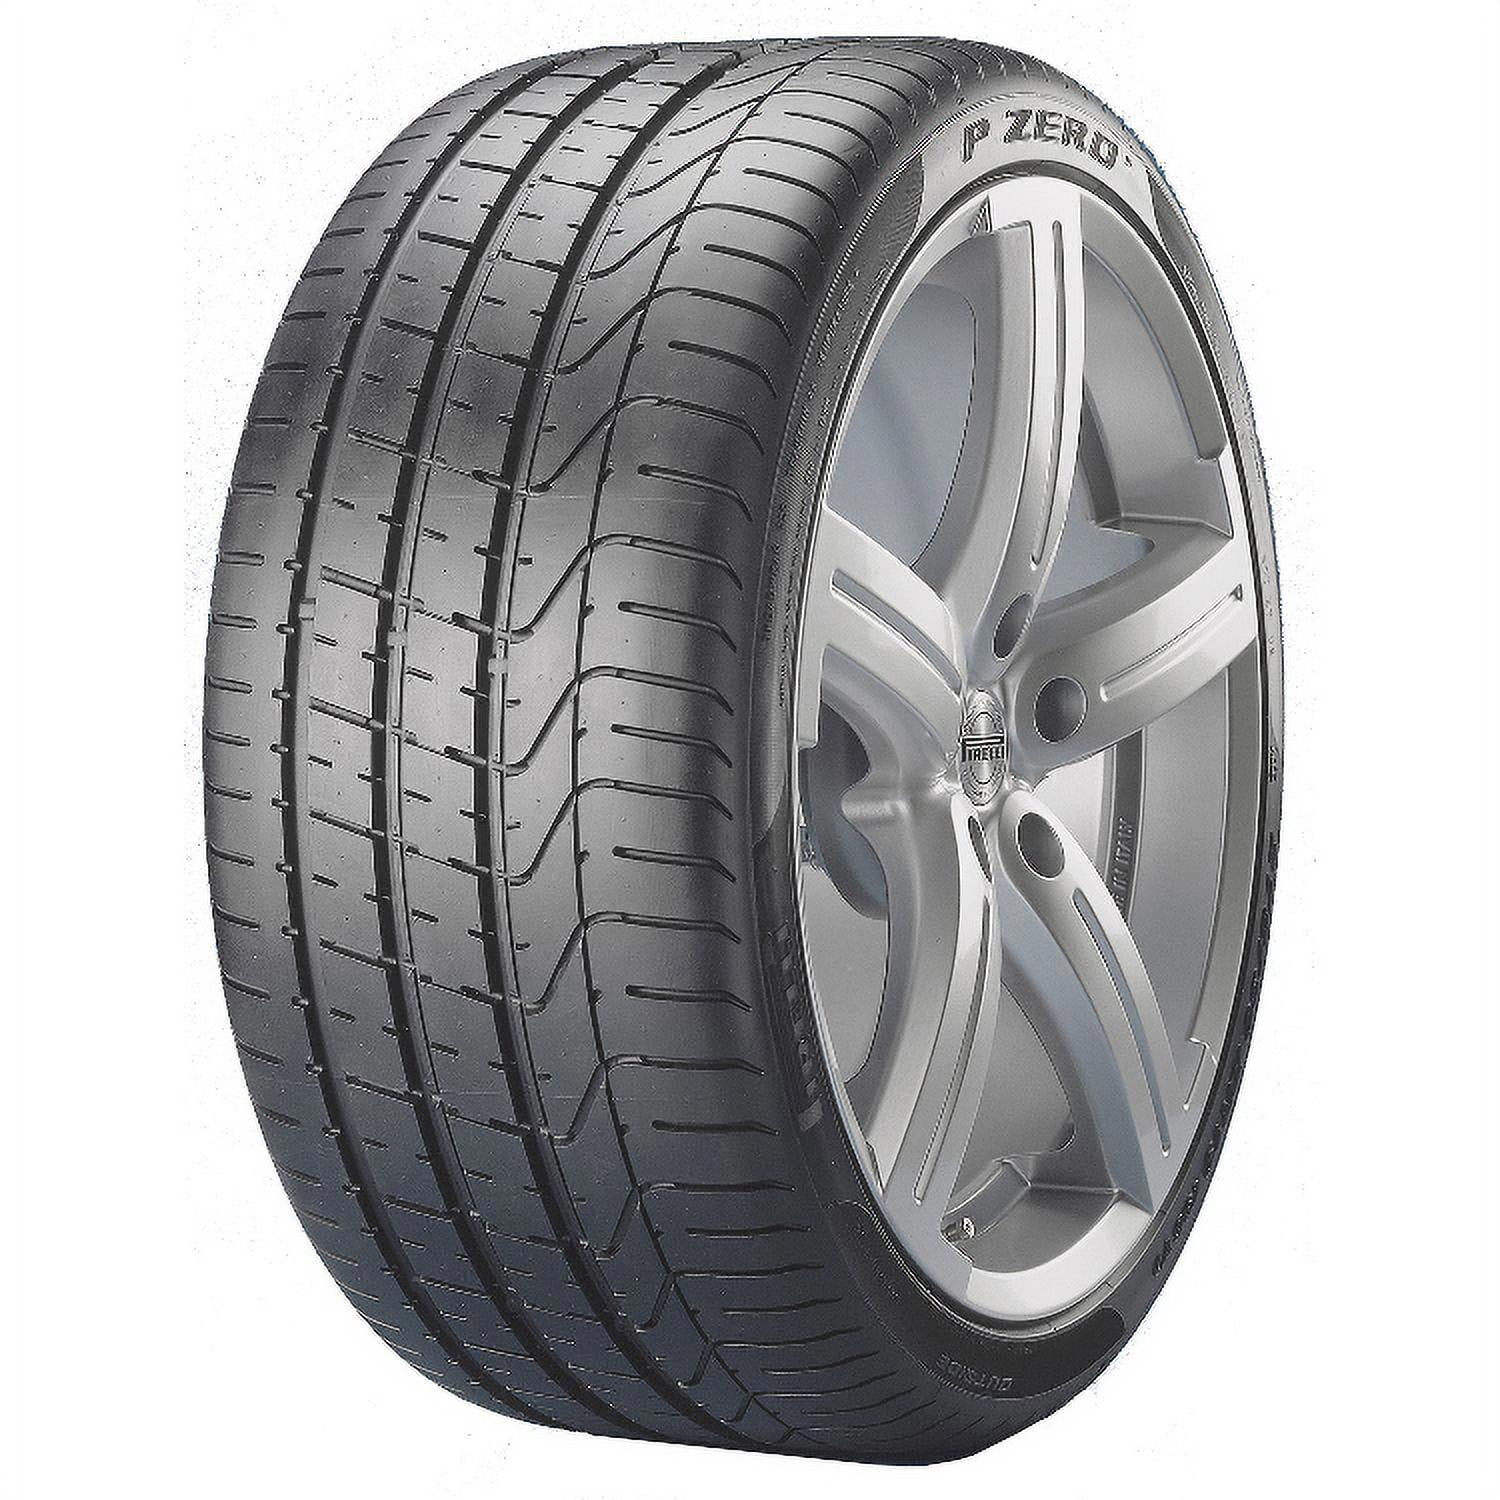 Maxx Tires Sport Dunlop